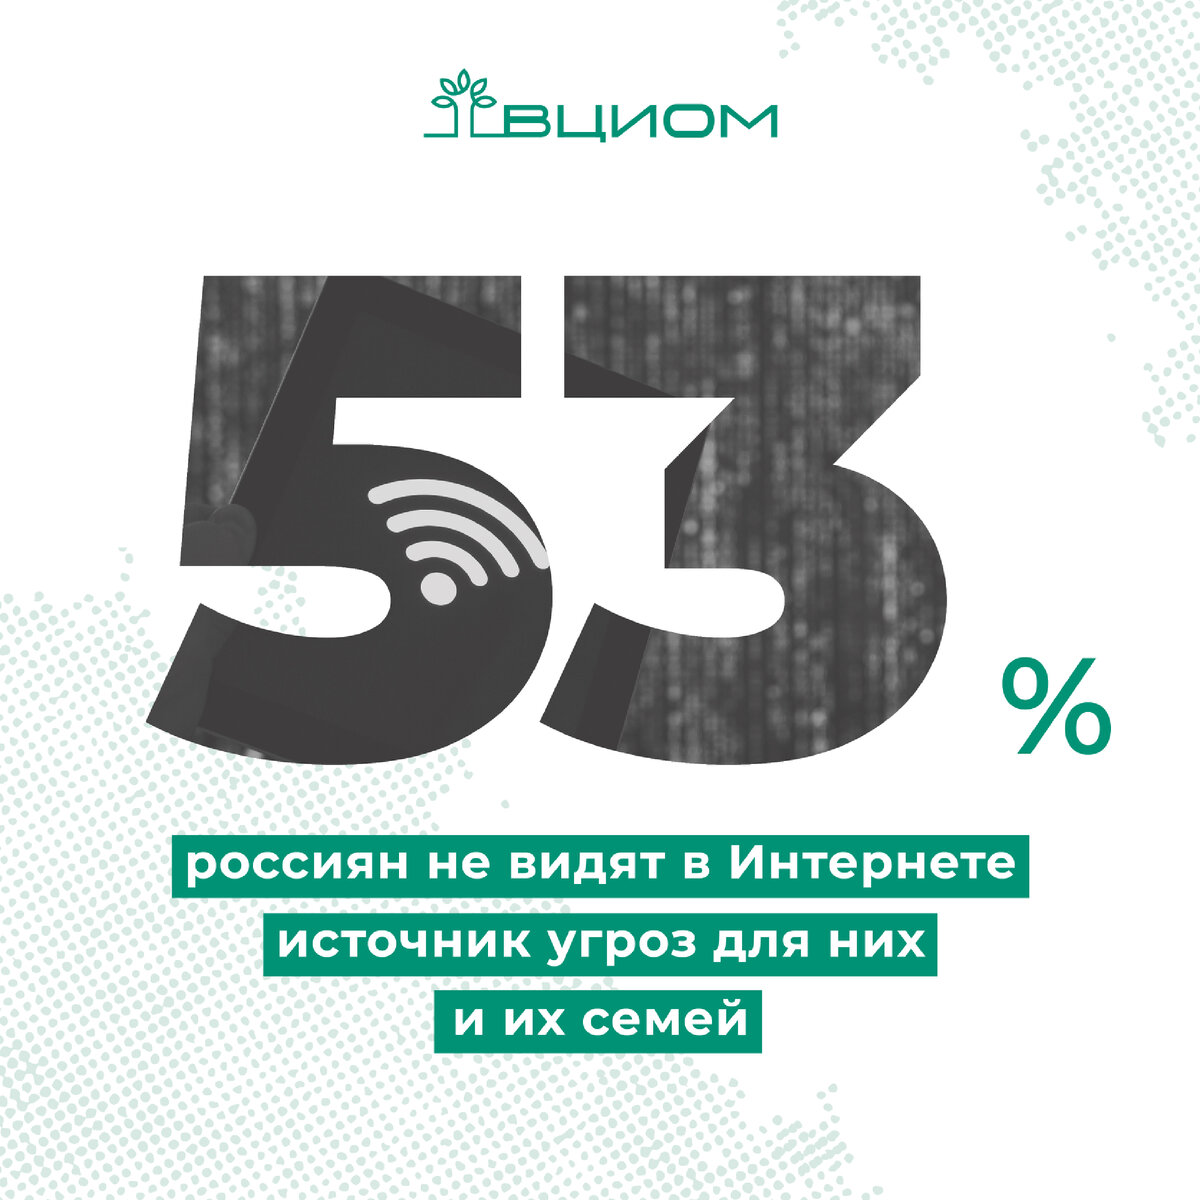 🛜 5 из 10 россиян считают интернет неконтролируемым пространством, в котором много недостоверной и вредной информации (49%, +22 п.п. за 16 лет).